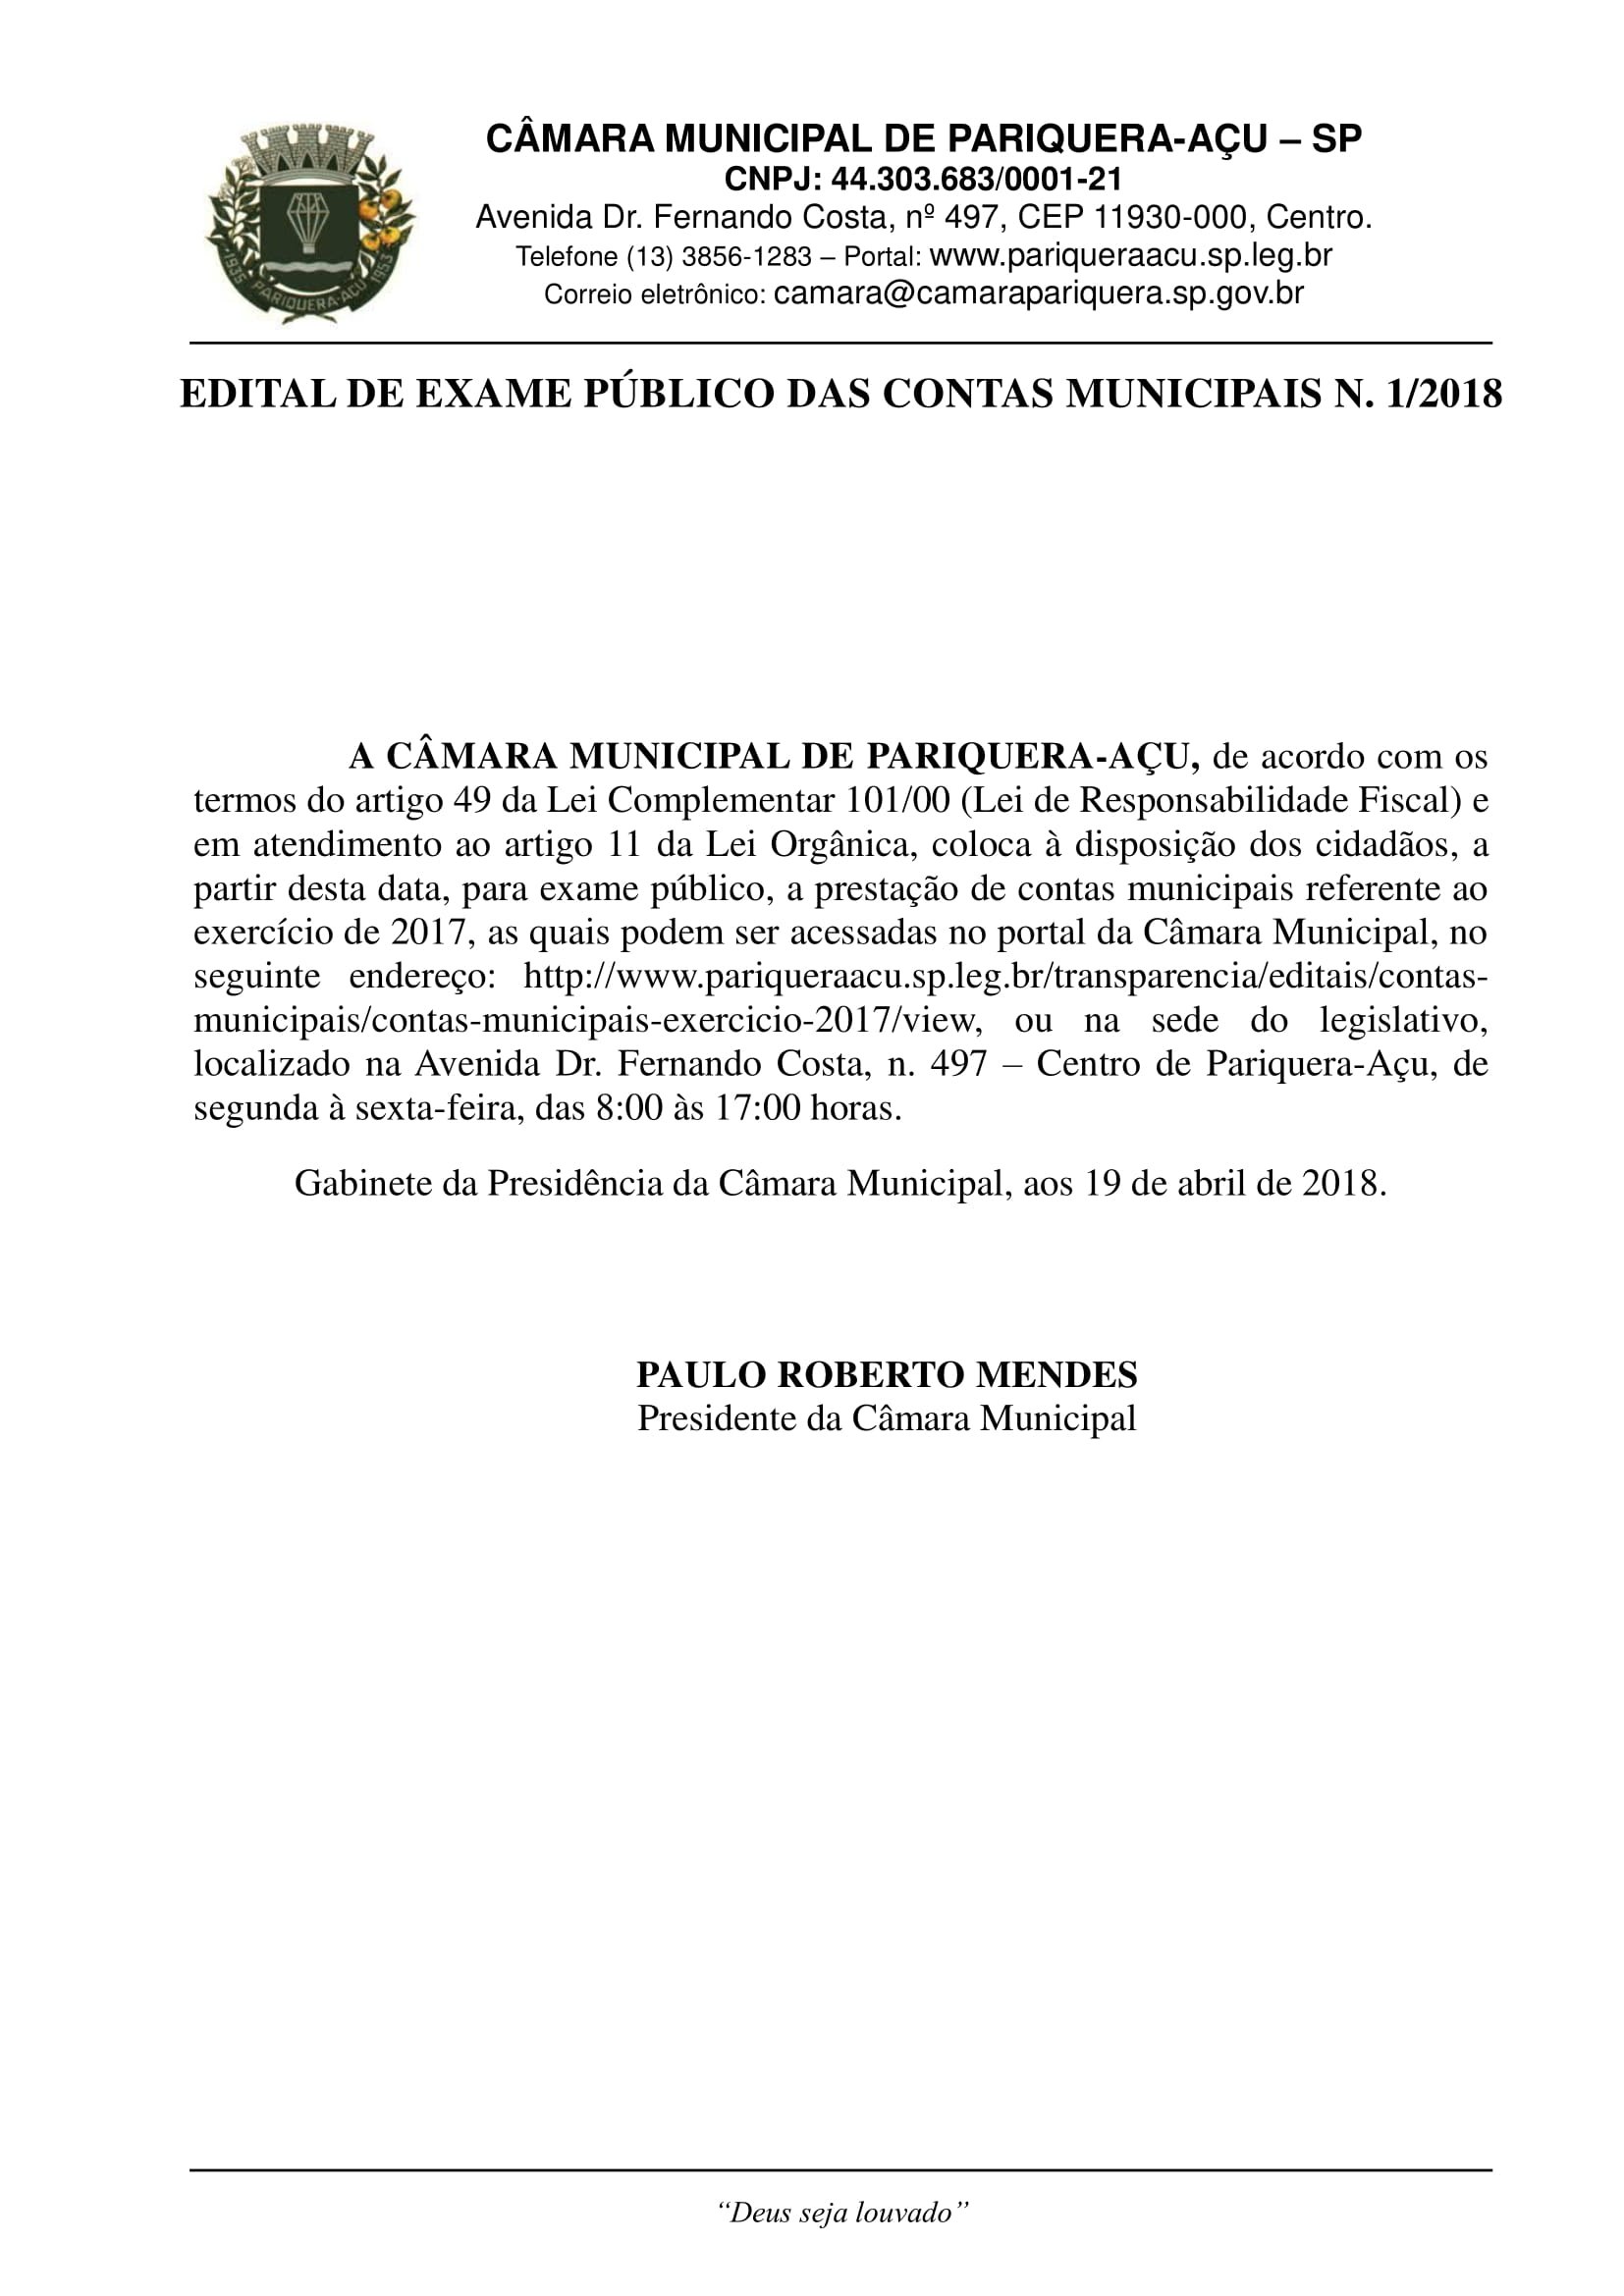 Edital de Exame Público das Contas Municipais nº 1/2018